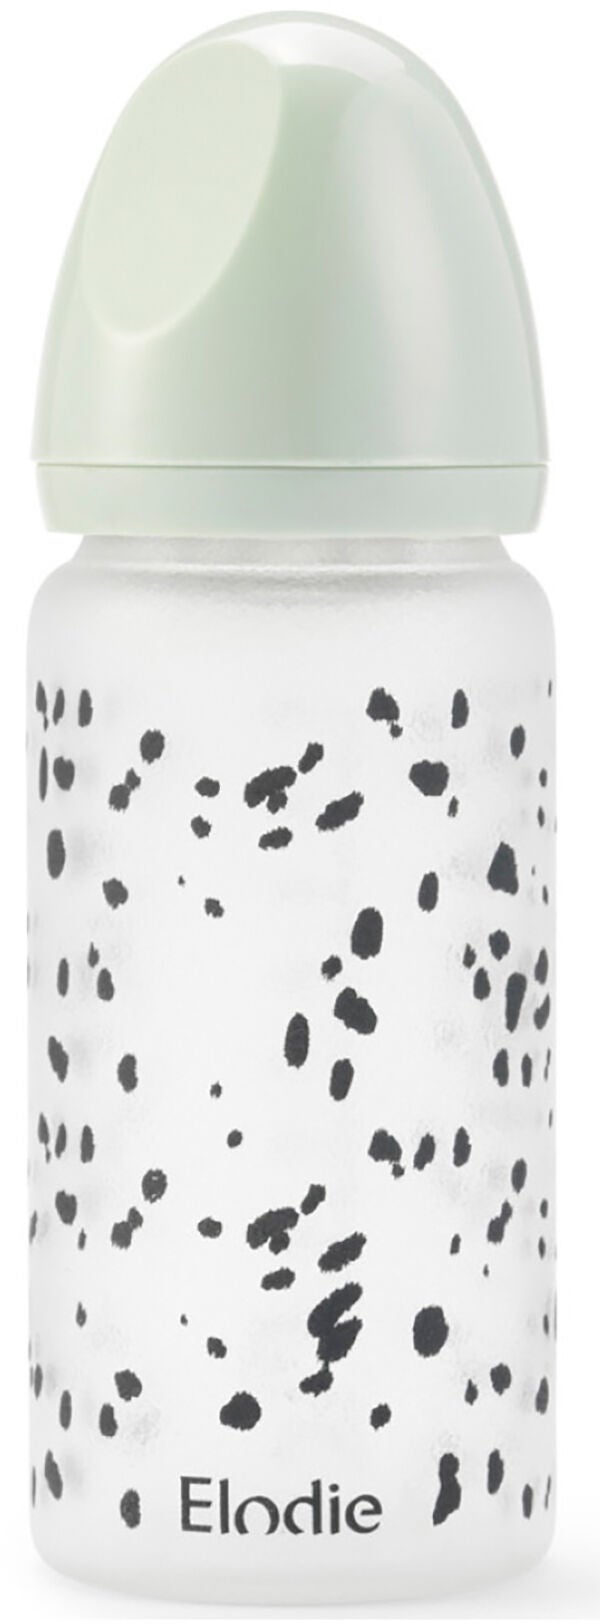 Elodie Babyflasche Glas, Dalmatian Dots von Elodie Details